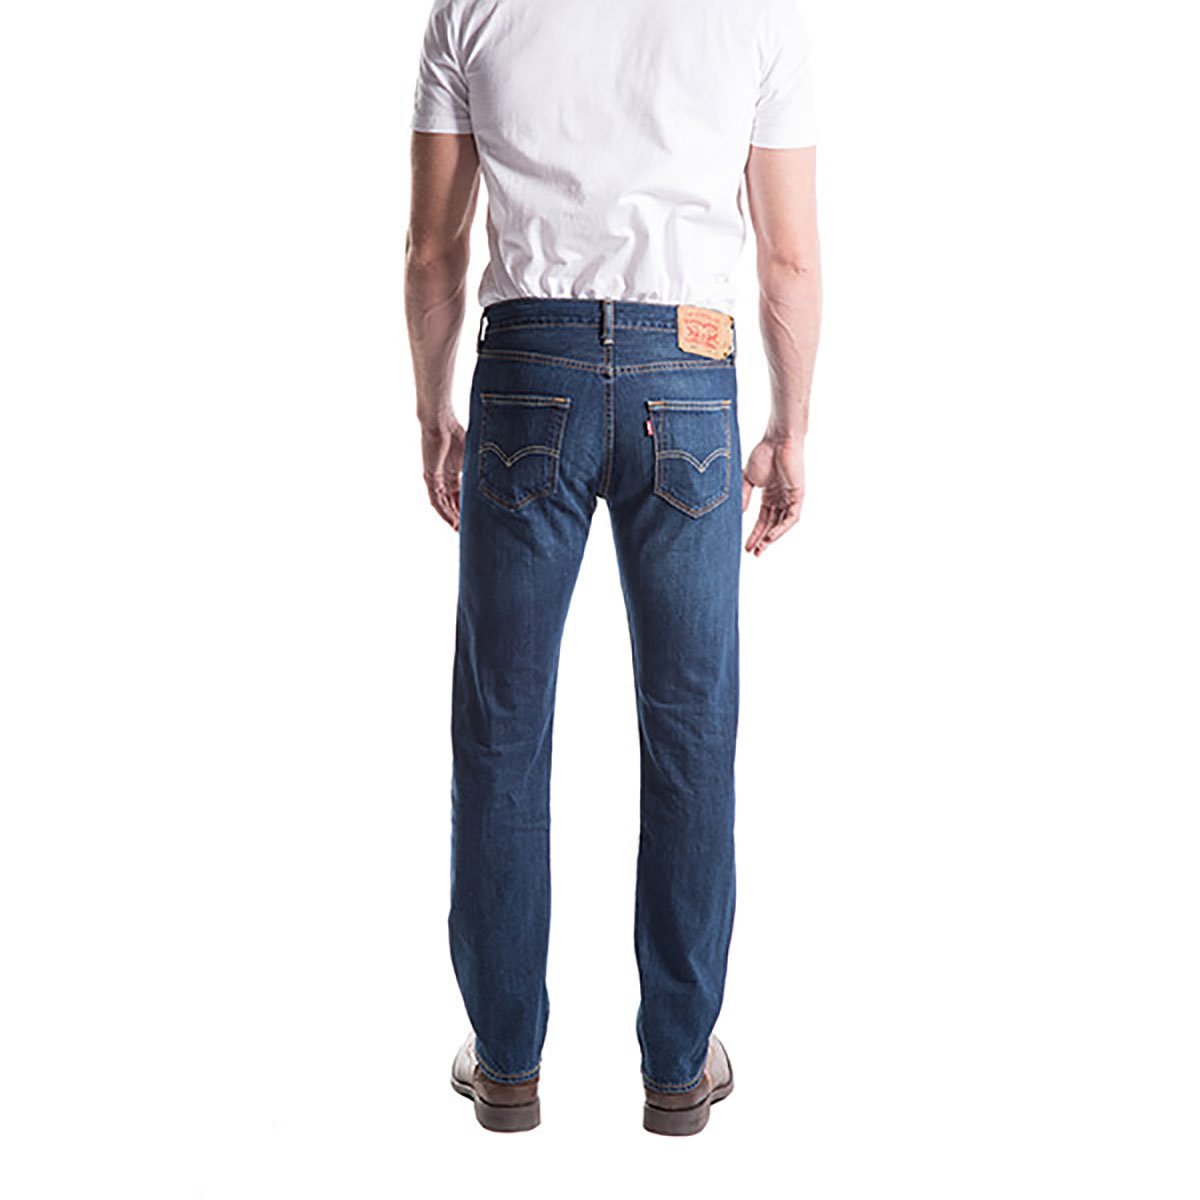 Jeans 501 Original Fit Levis